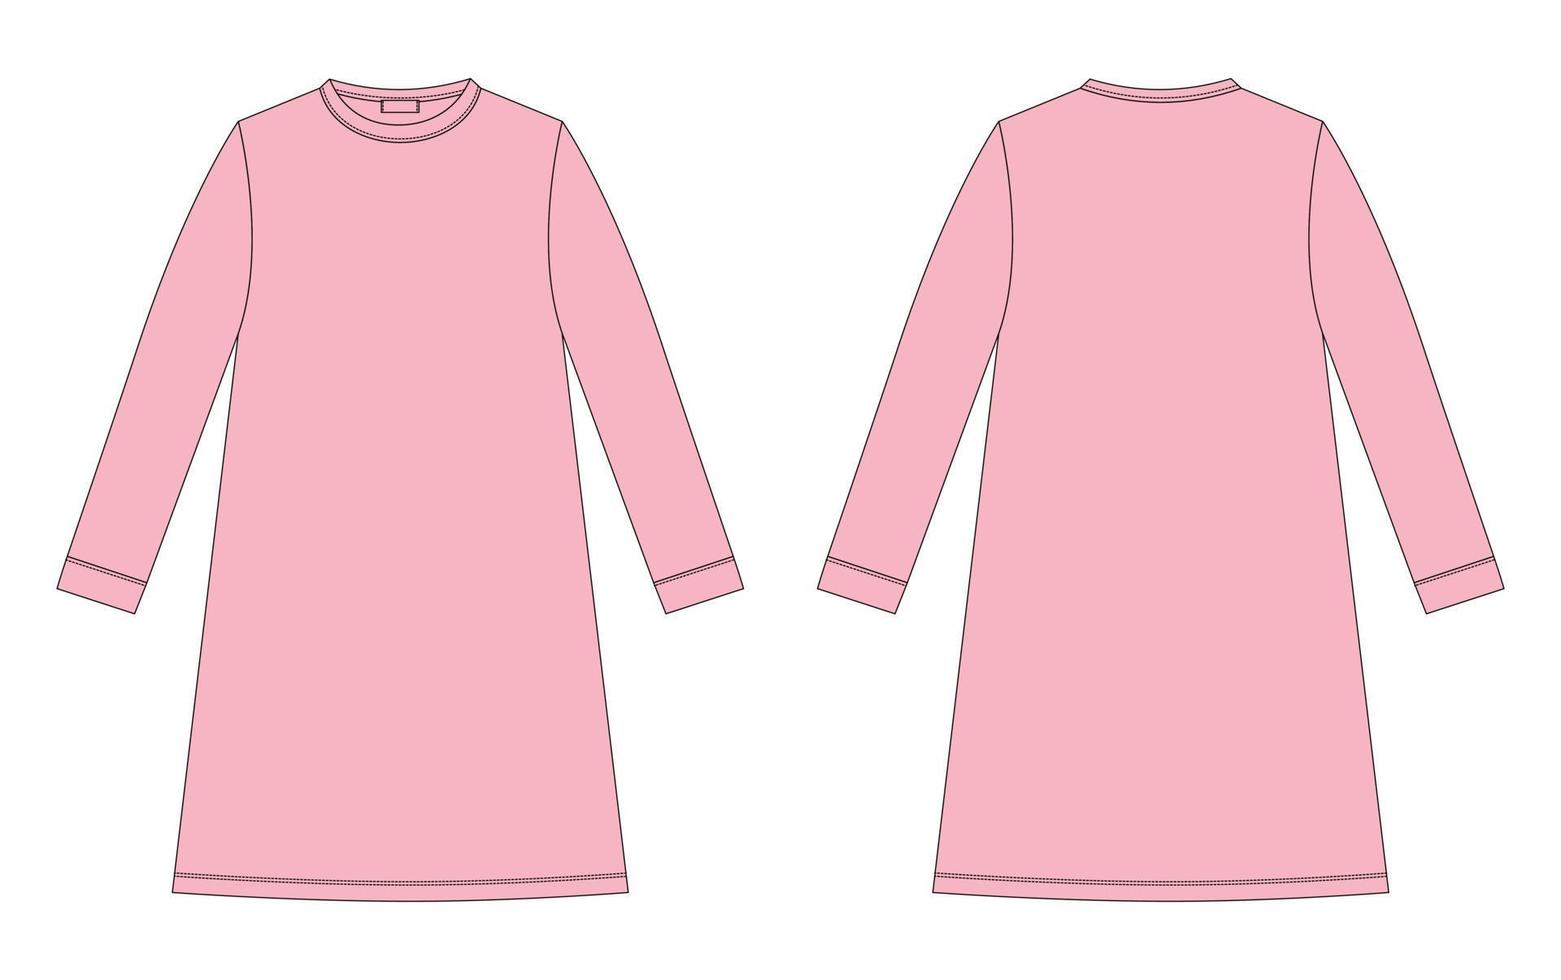 croquis technique chemise de nuit. nuisette en coton pour enfants. couleur rose pêche. chemise de nuit. vecteur